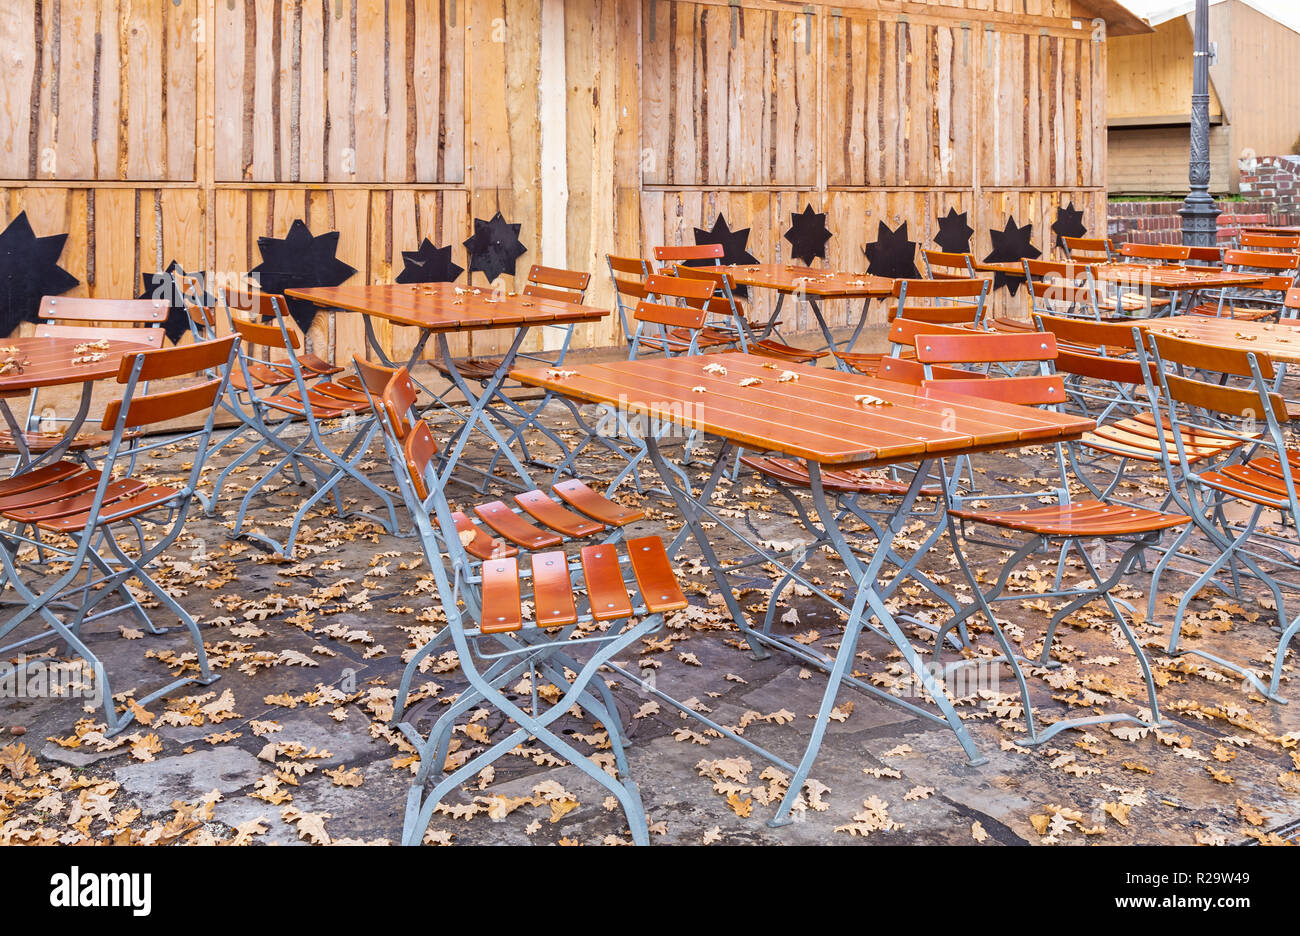 Abbandonato il ristorante giardino in autunno Foto Stock